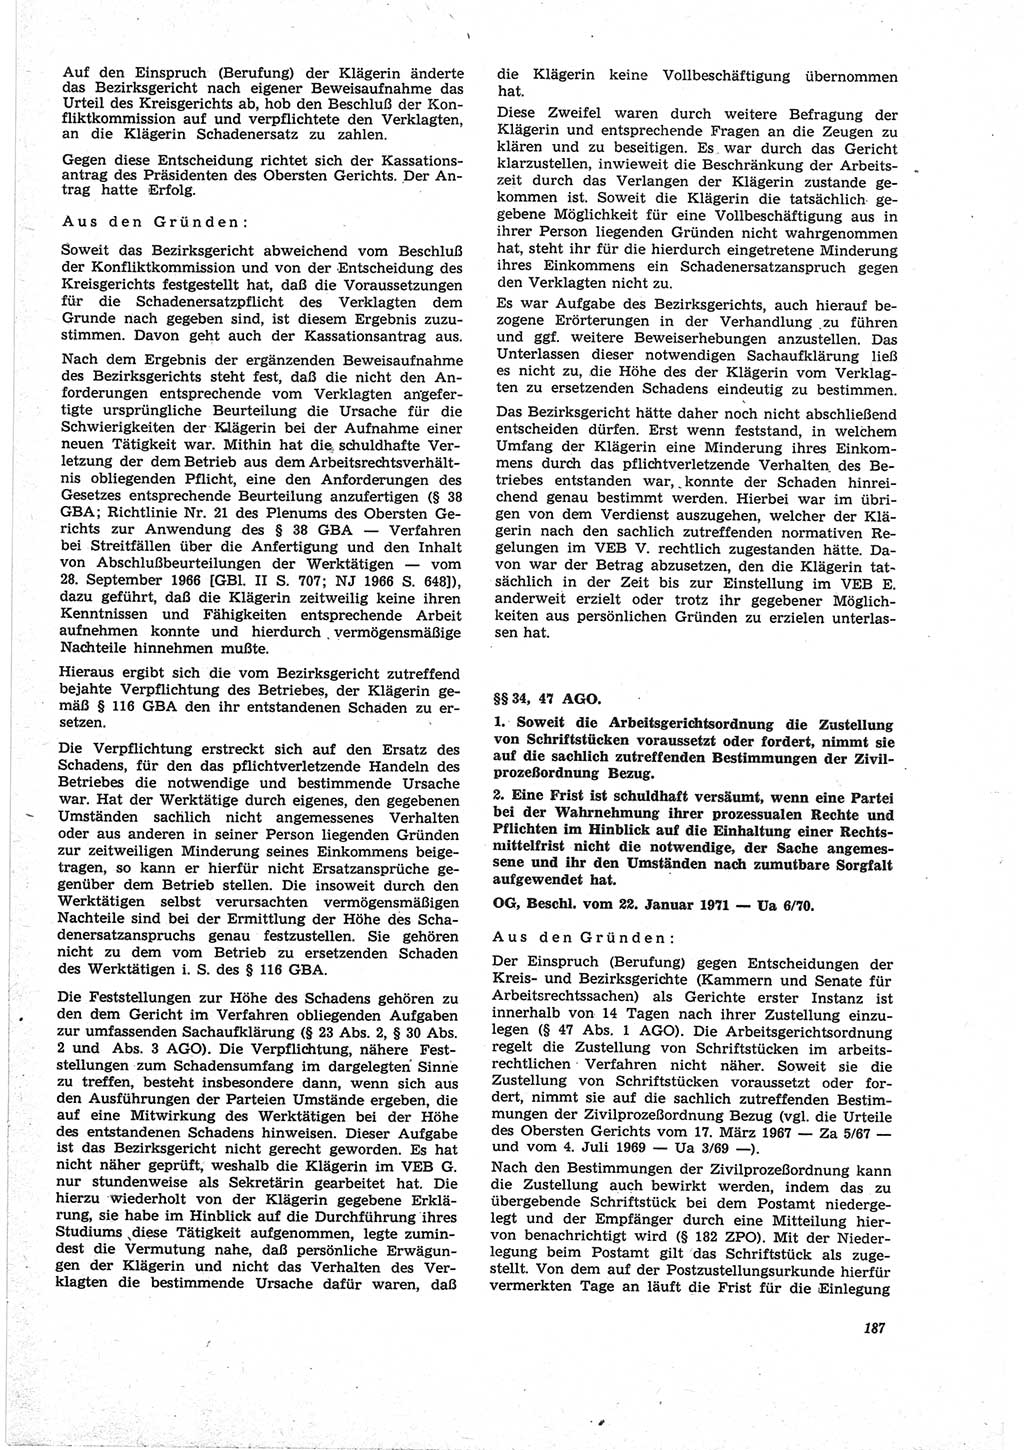 Neue Justiz (NJ), Zeitschrift für Recht und Rechtswissenschaft [Deutsche Demokratische Republik (DDR)], 25. Jahrgang 1971, Seite 187 (NJ DDR 1971, S. 187)